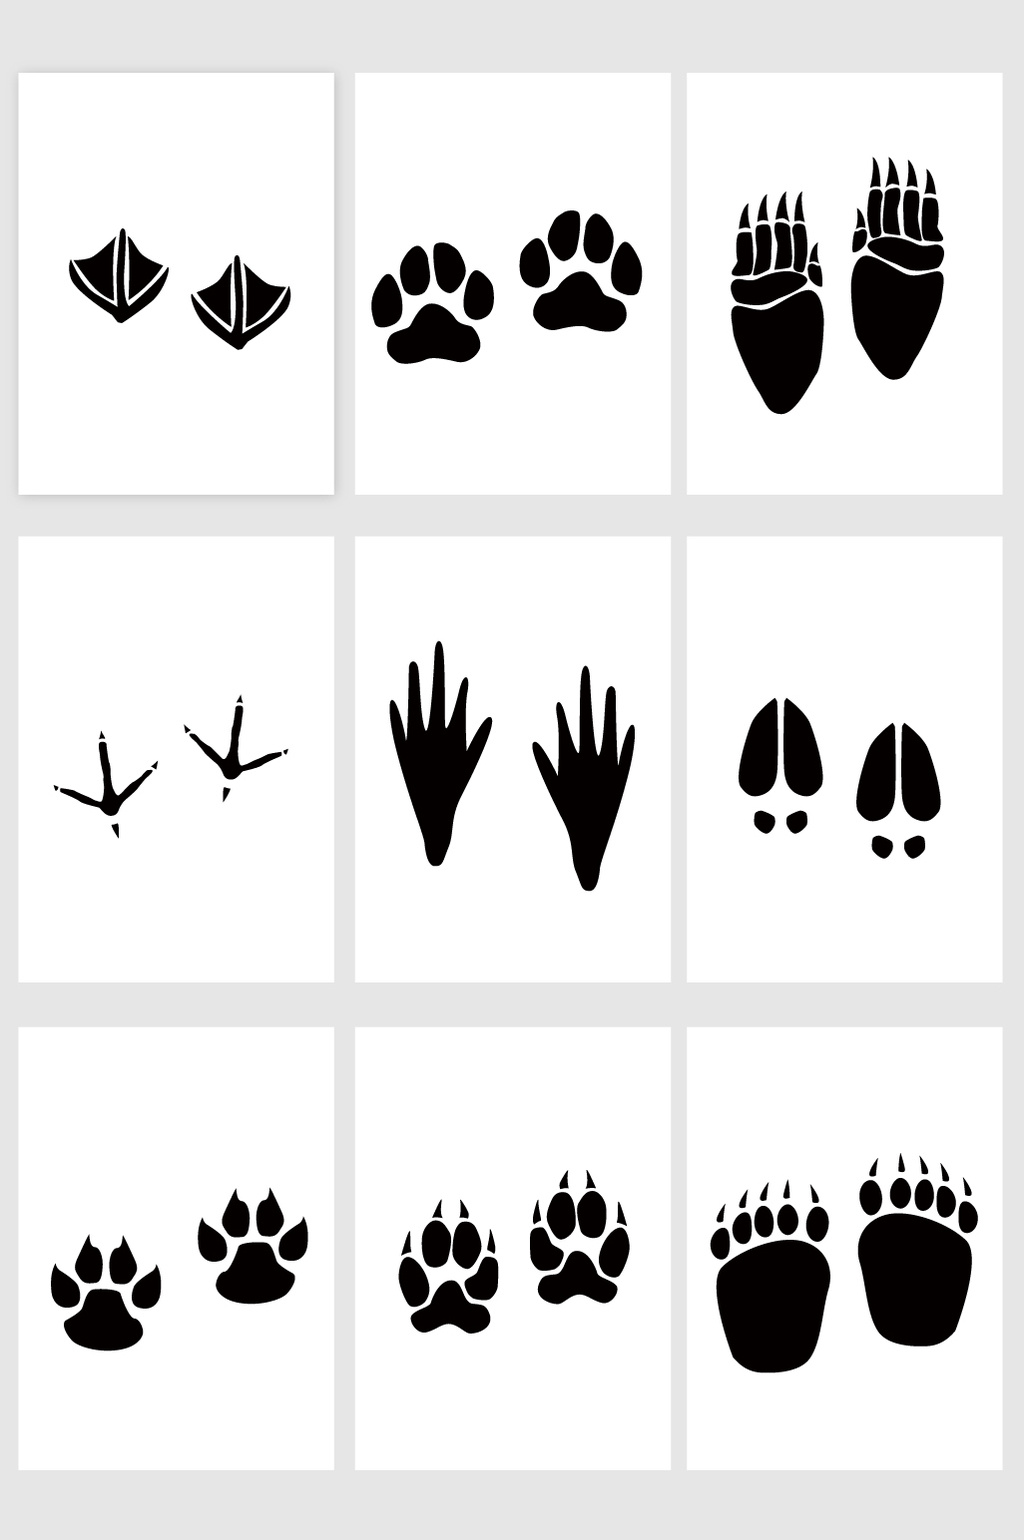 野生生物动物脚印 向量例证. 插画 包括有 爪子, 图标, 设计, 标记, 分级显示, 河马, 例证, 野兔 - 73203660